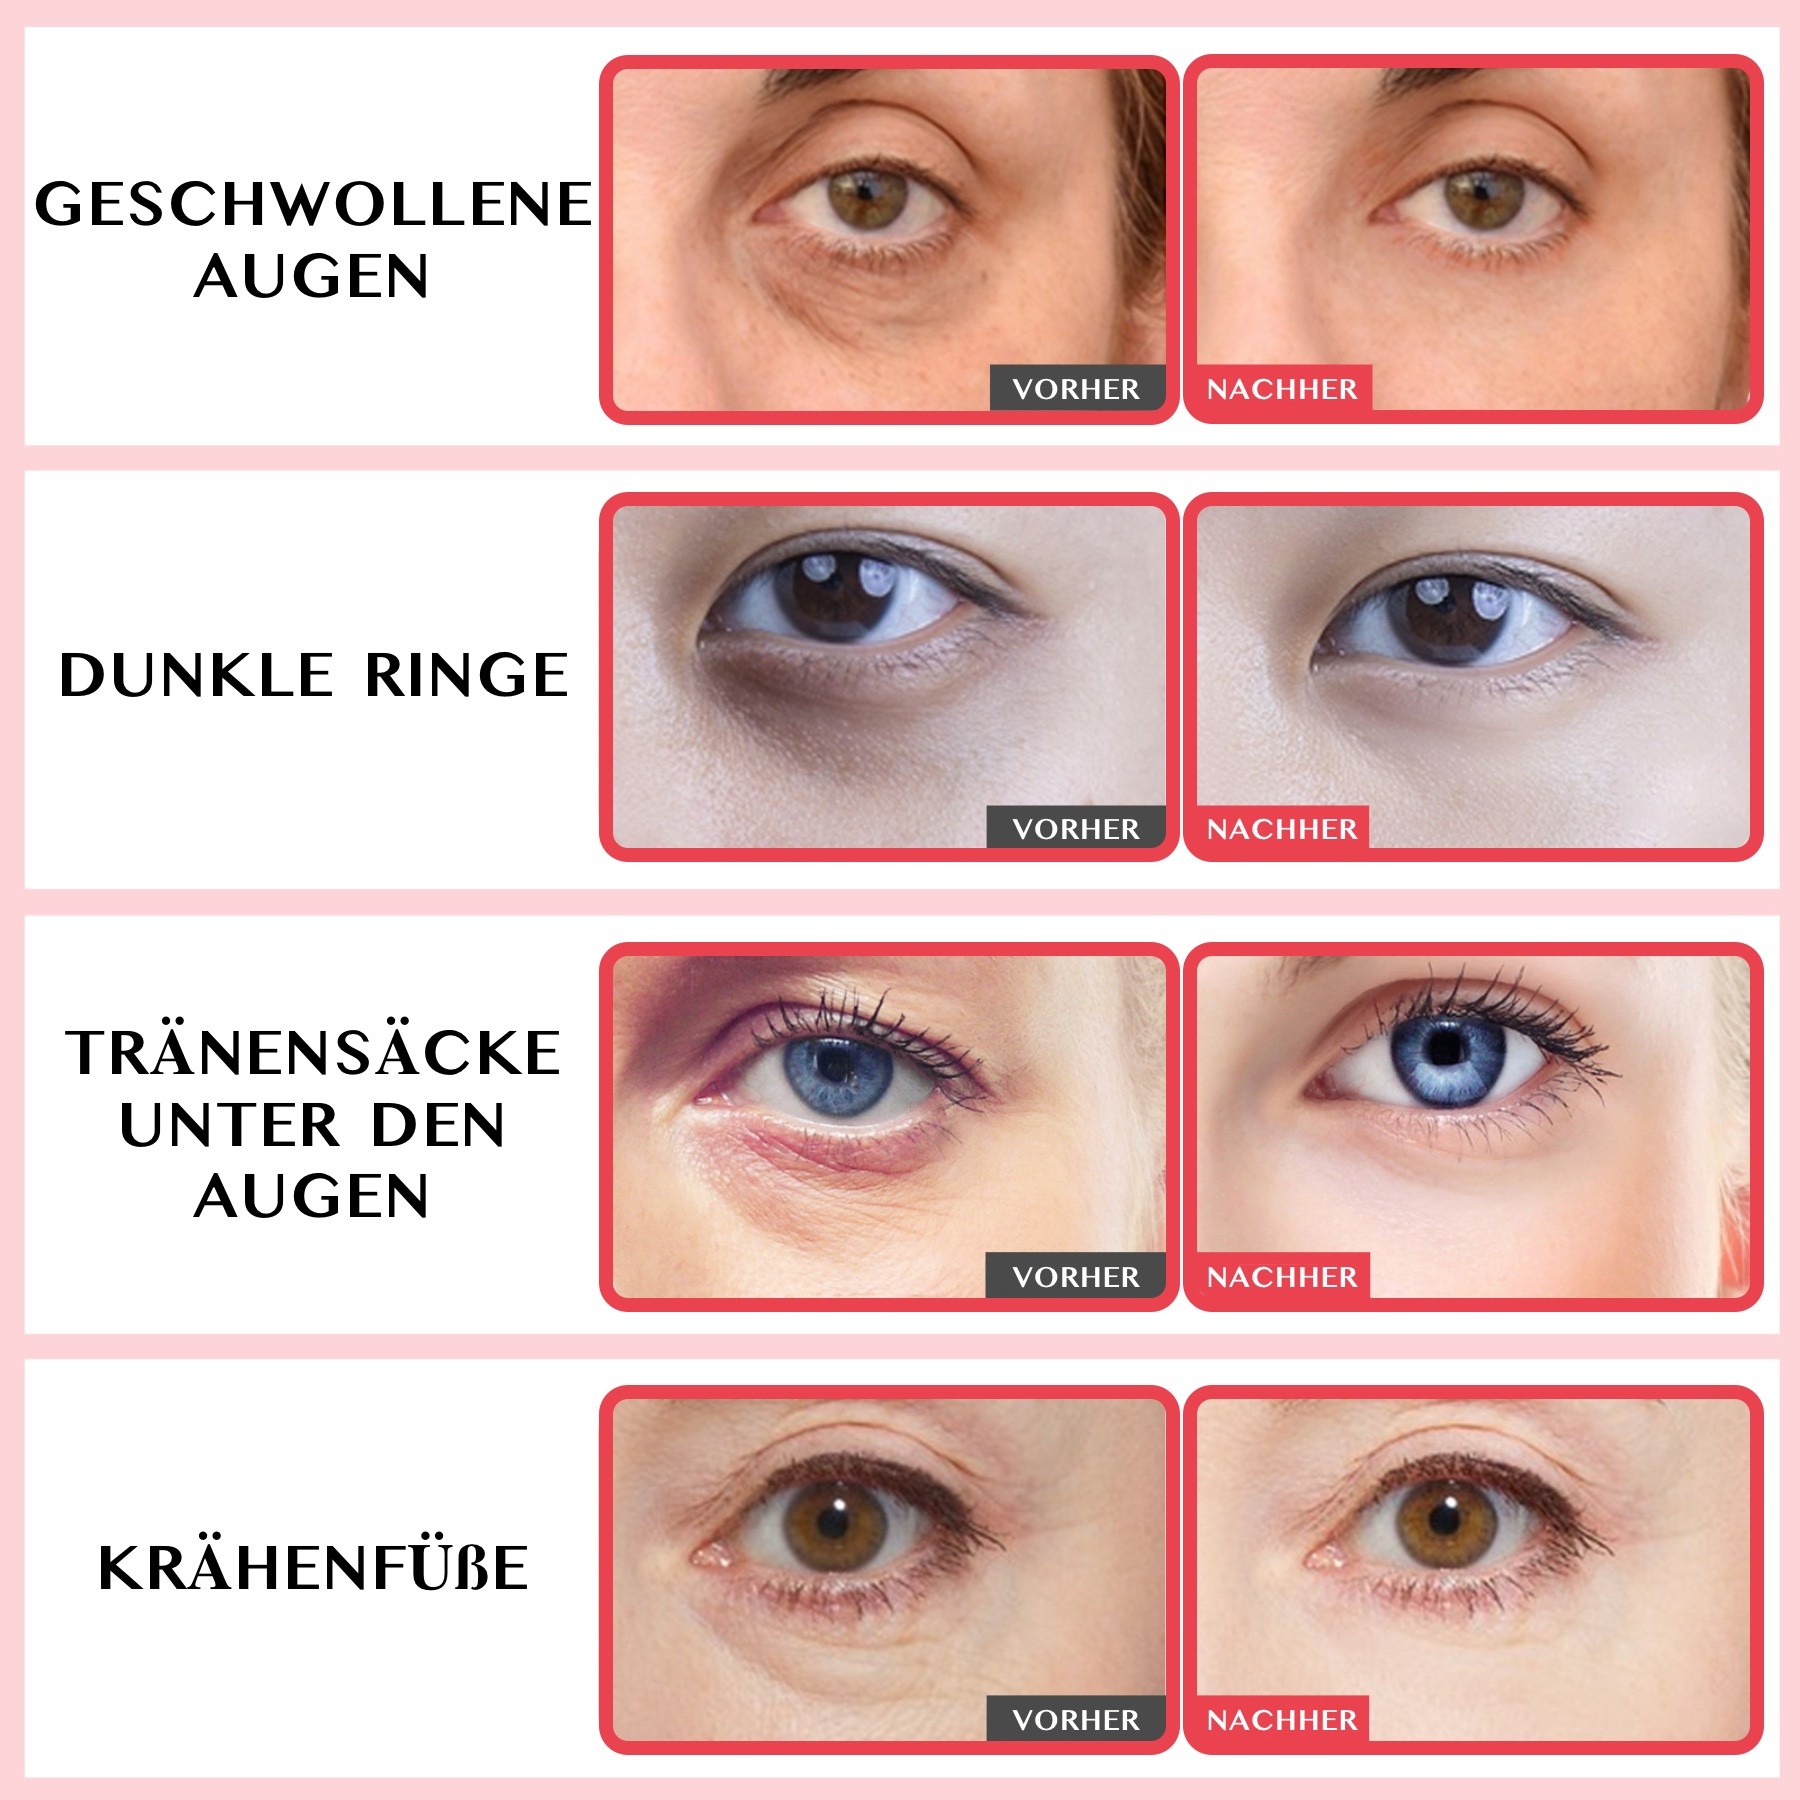 Augencreme Anti Aging Falten Augenpflege mit Retinol Kollagen Hyaluronsäure